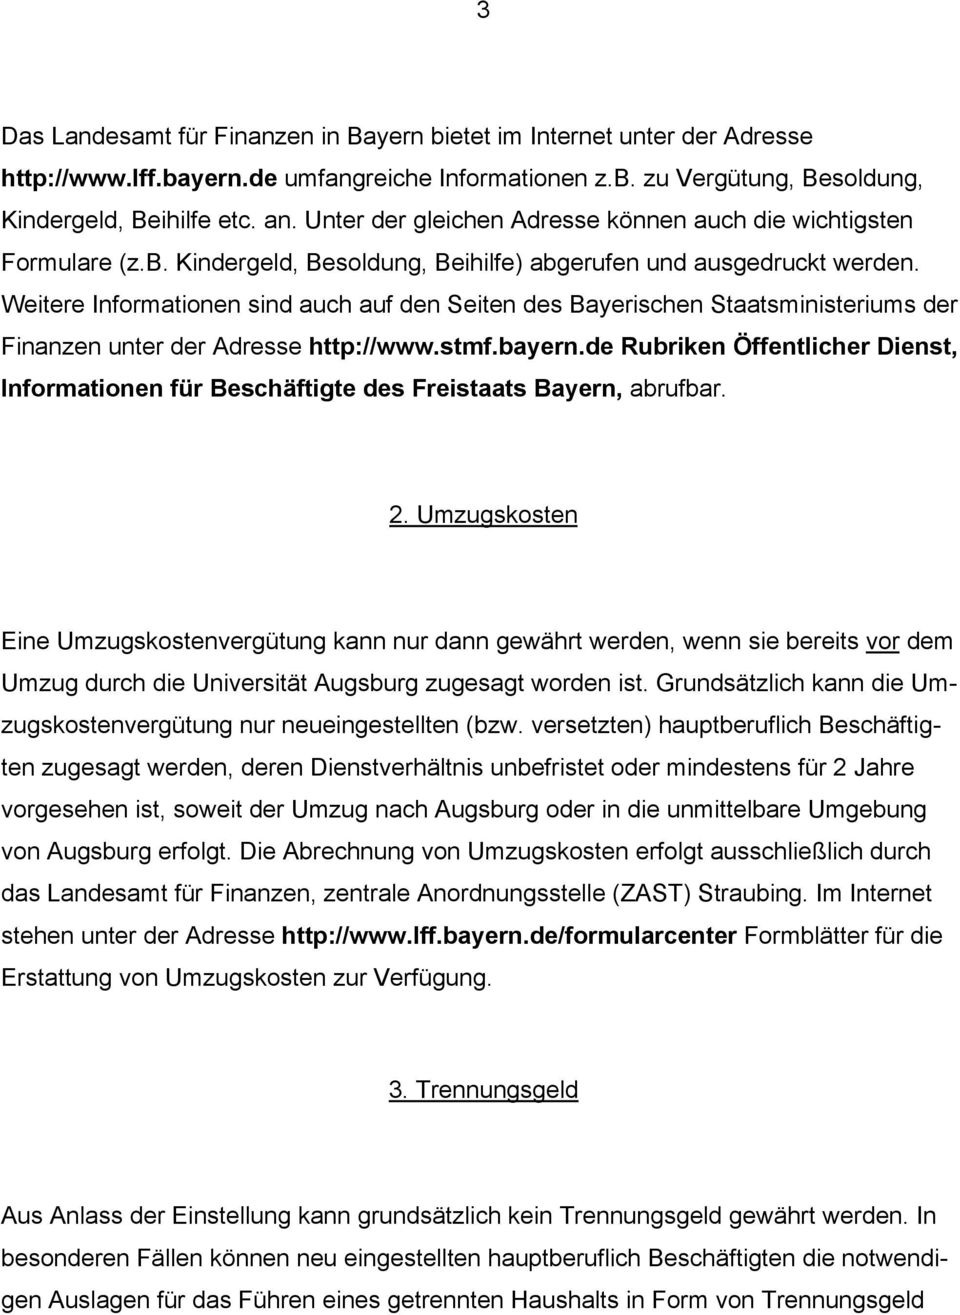 Weitere Informationen sind auch auf den Seiten des Bayerischen Staatsministeriums der Finanzen unter der Adresse http://www.stmf.bayern.